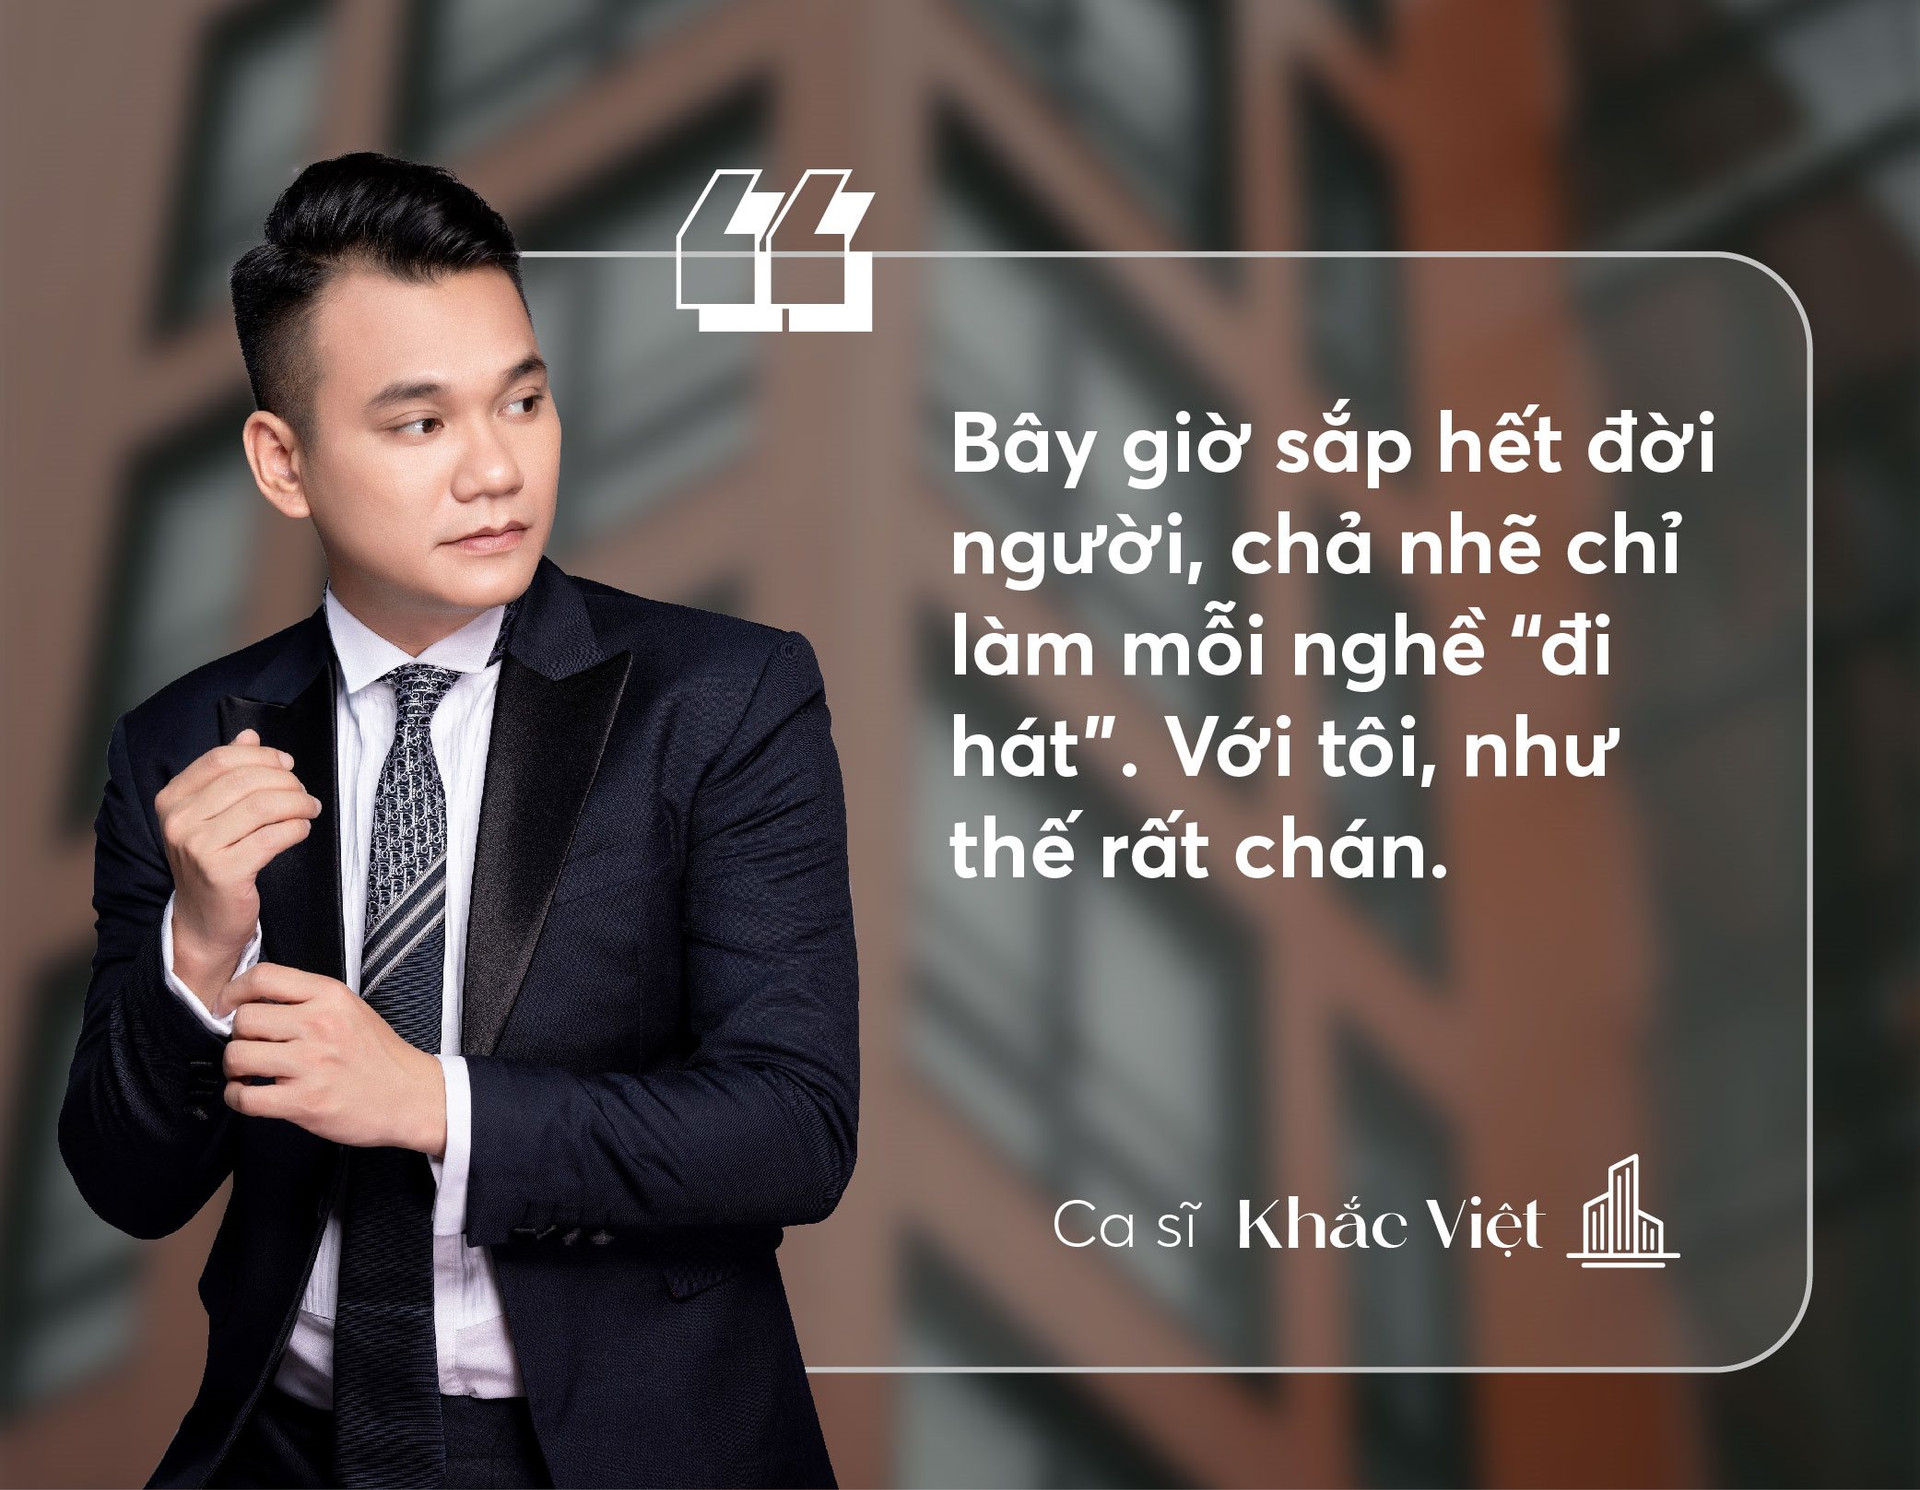 Ca sĩ Khắc Việt: “Khi thị trường bất động sản sôi động, anh đầu tư thắng, anh nói gì cũng sẽ hay” - Ảnh 2.